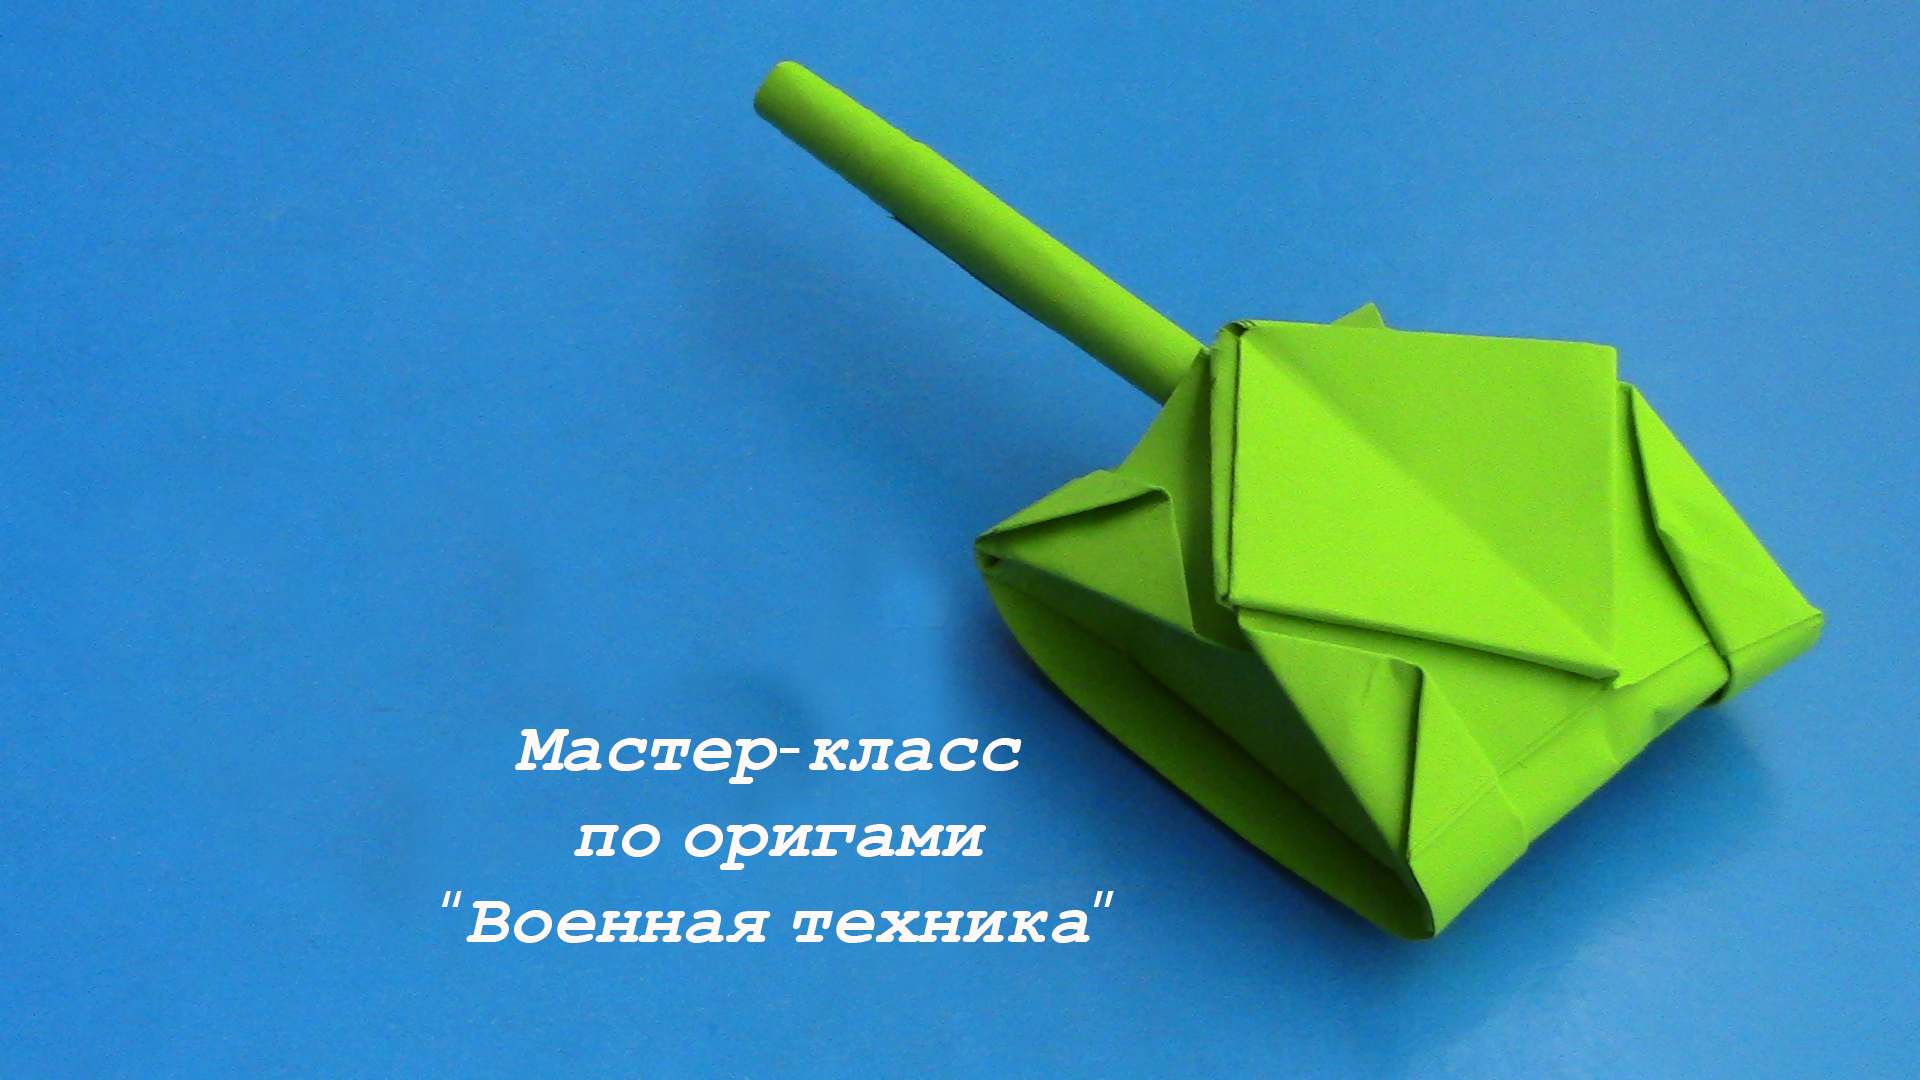 Мастер-класс по оригами на тему «Военная техника»..